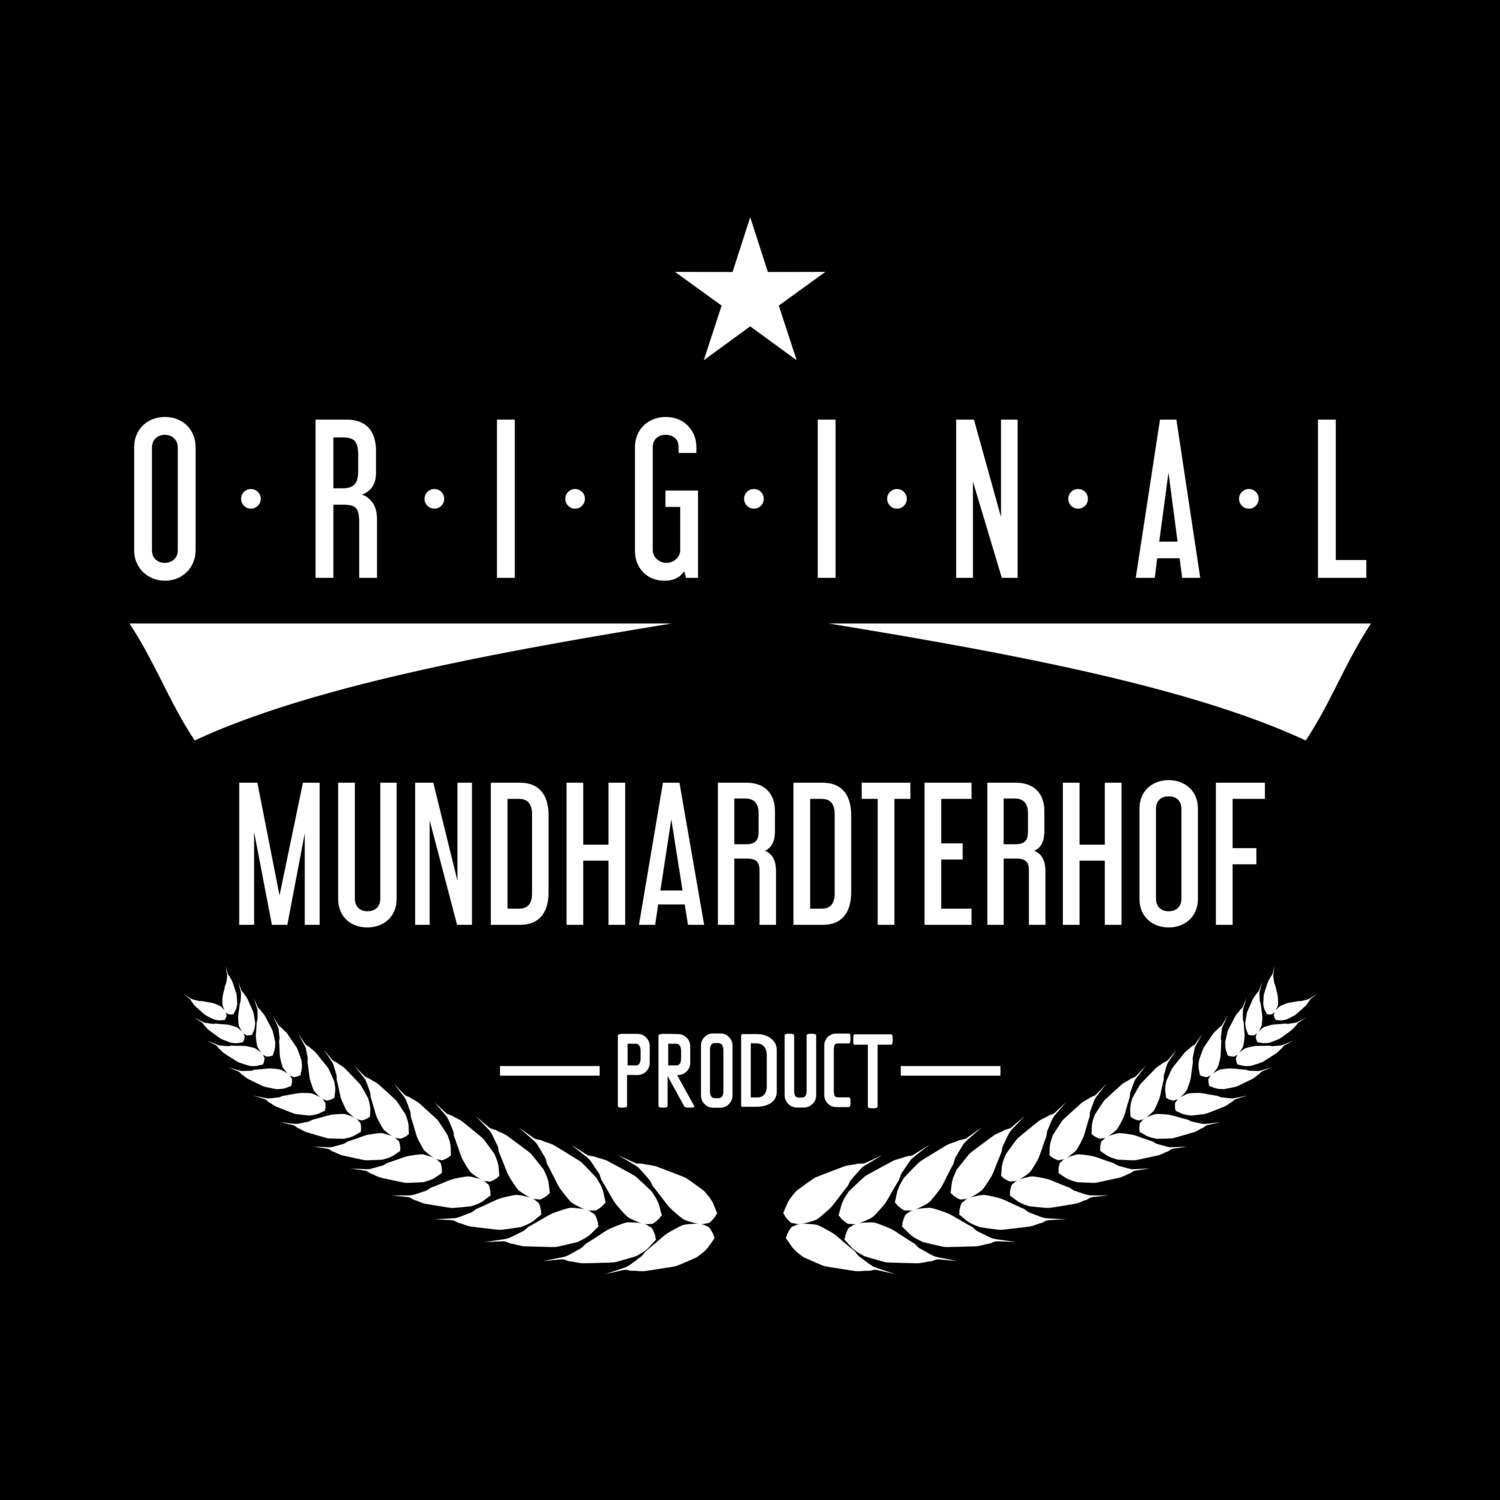 Mundhardterhof T-Shirt »Original Product«